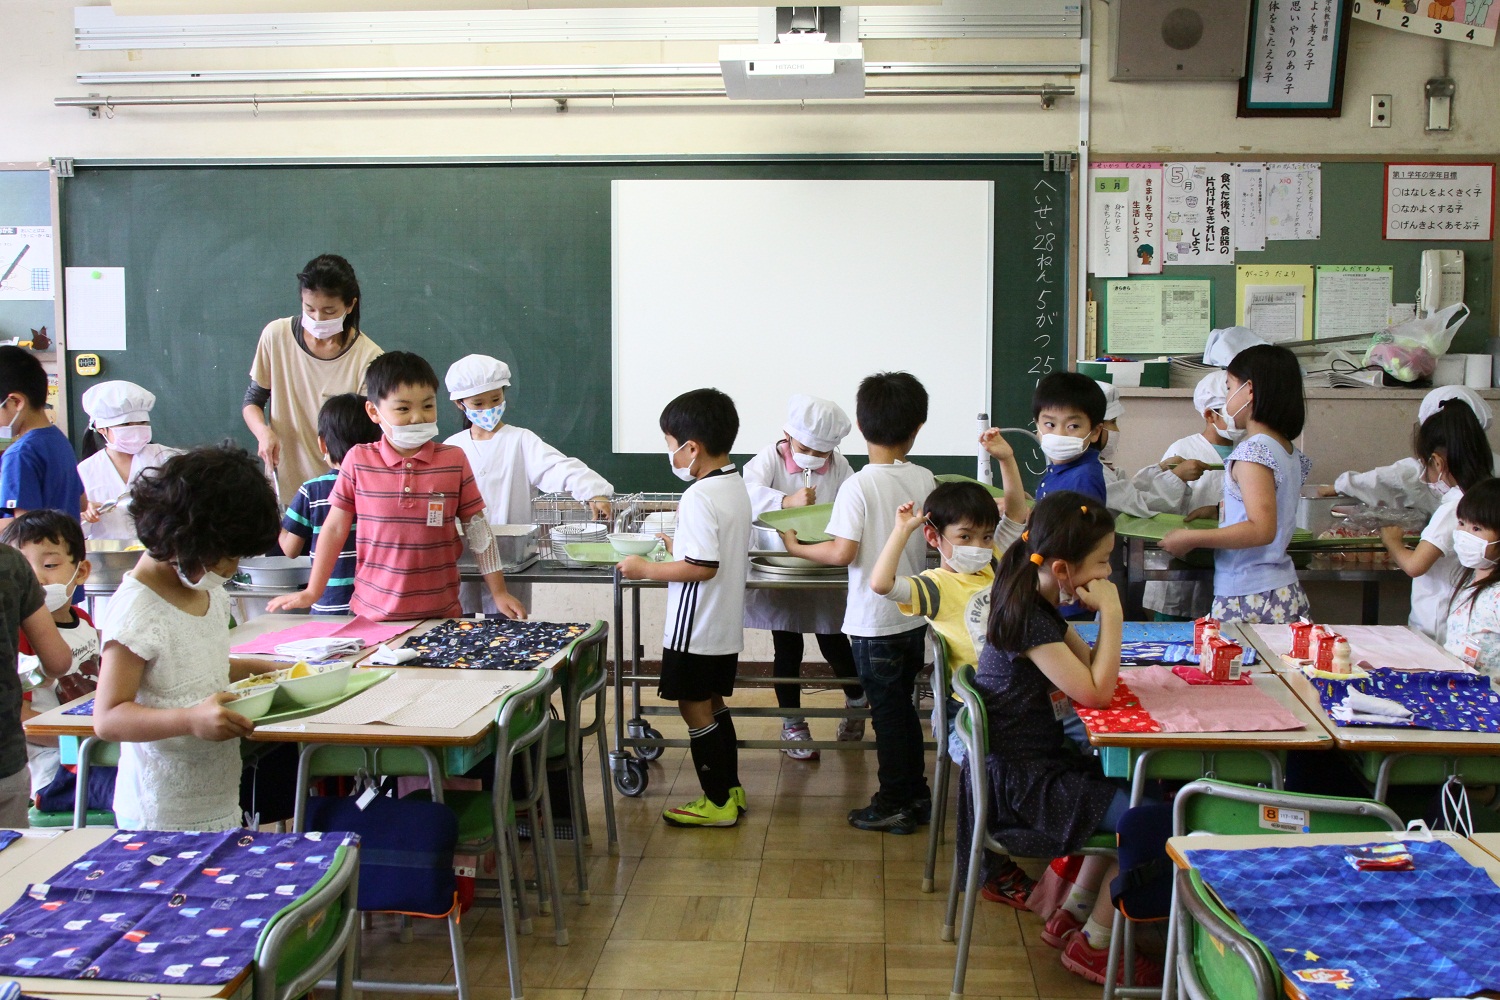  Sekolah di Jepang  Berperan Atur Nutrisi Siswa